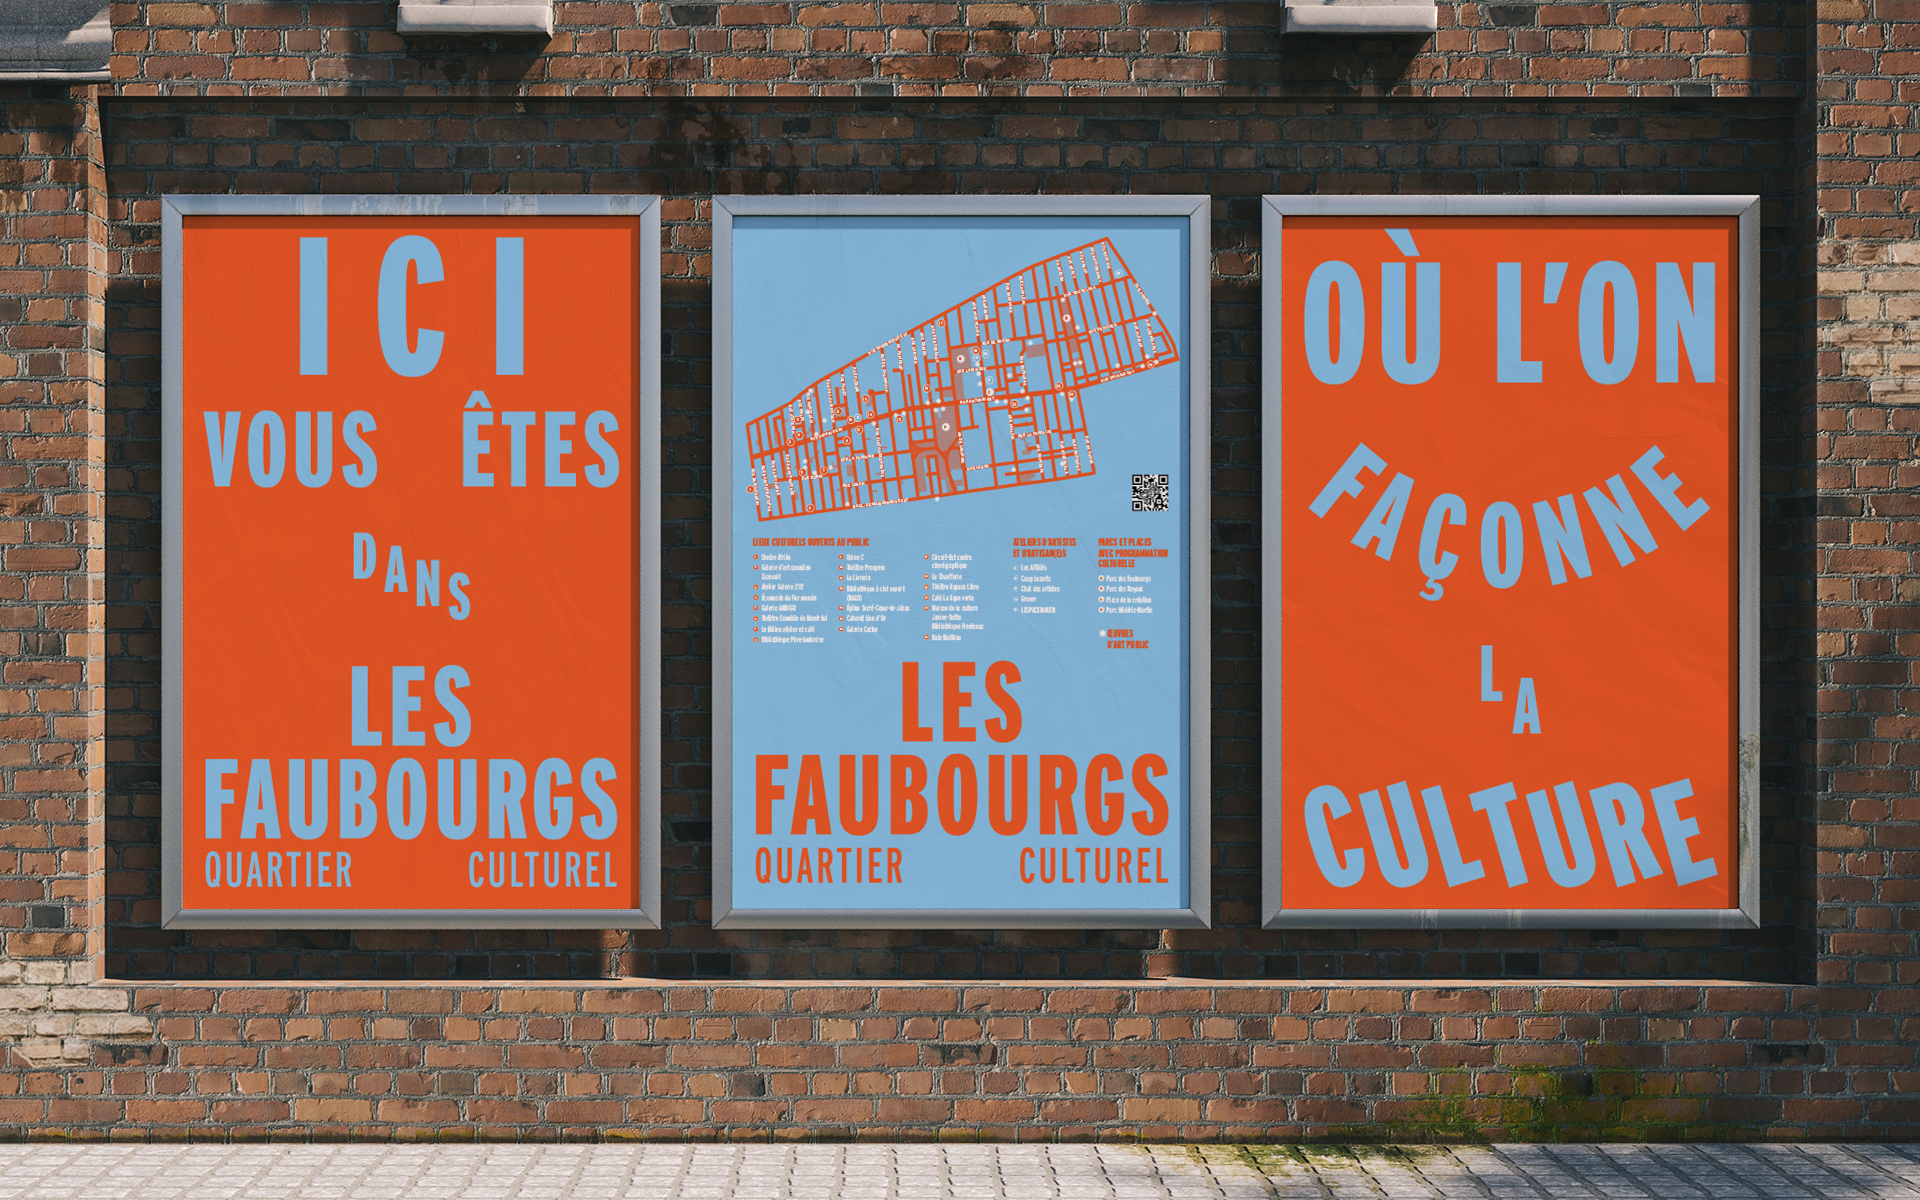 Arrondissement de Ville-Marie - Image de marque du Quartier culturel des Faubourgs